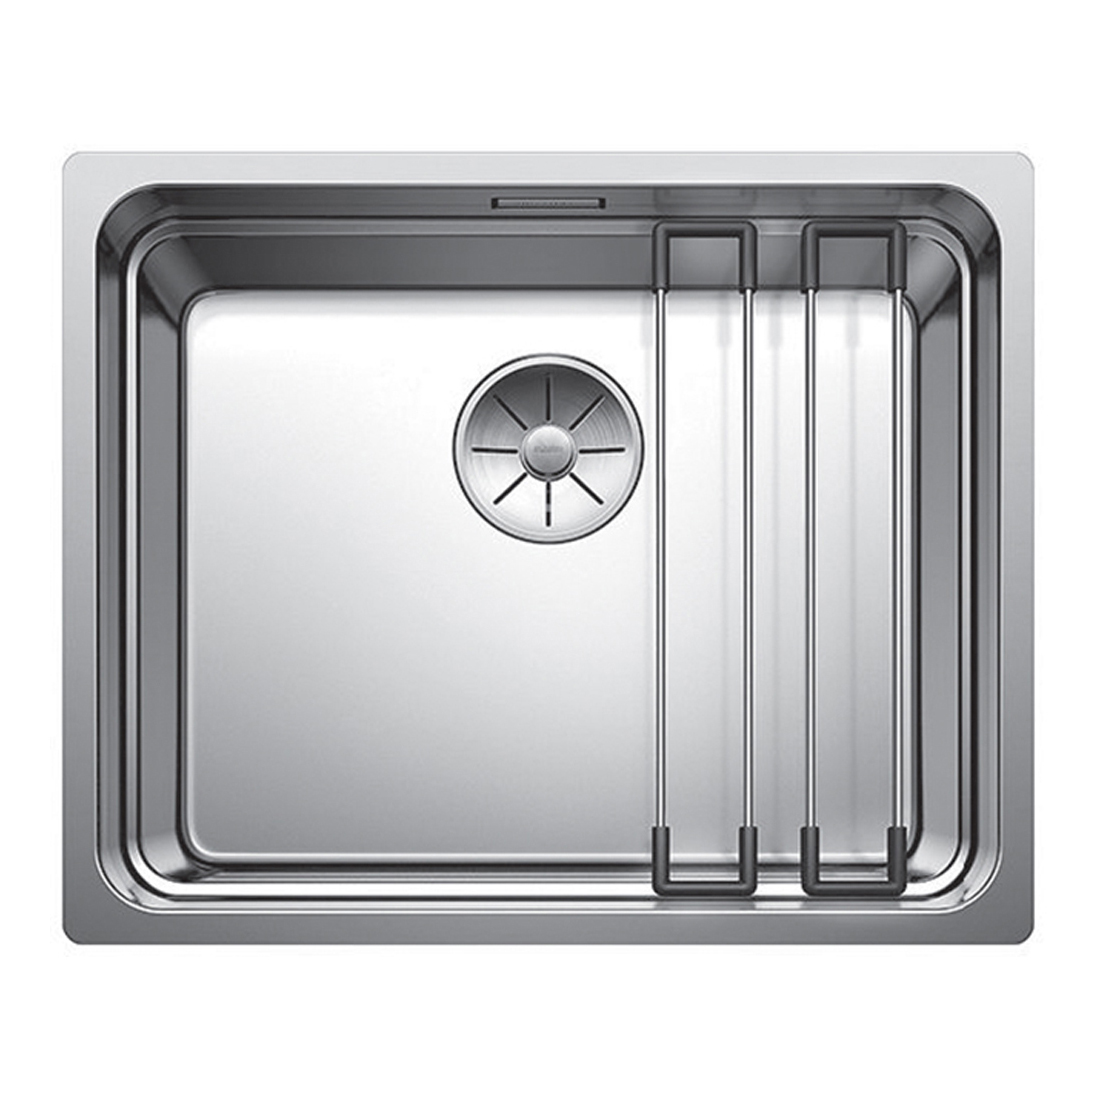 Кухонная мойка Blanco Etagon 500-IF полированная сталь кухонная мойка franke 101 0689 948 нержавеющая сталь